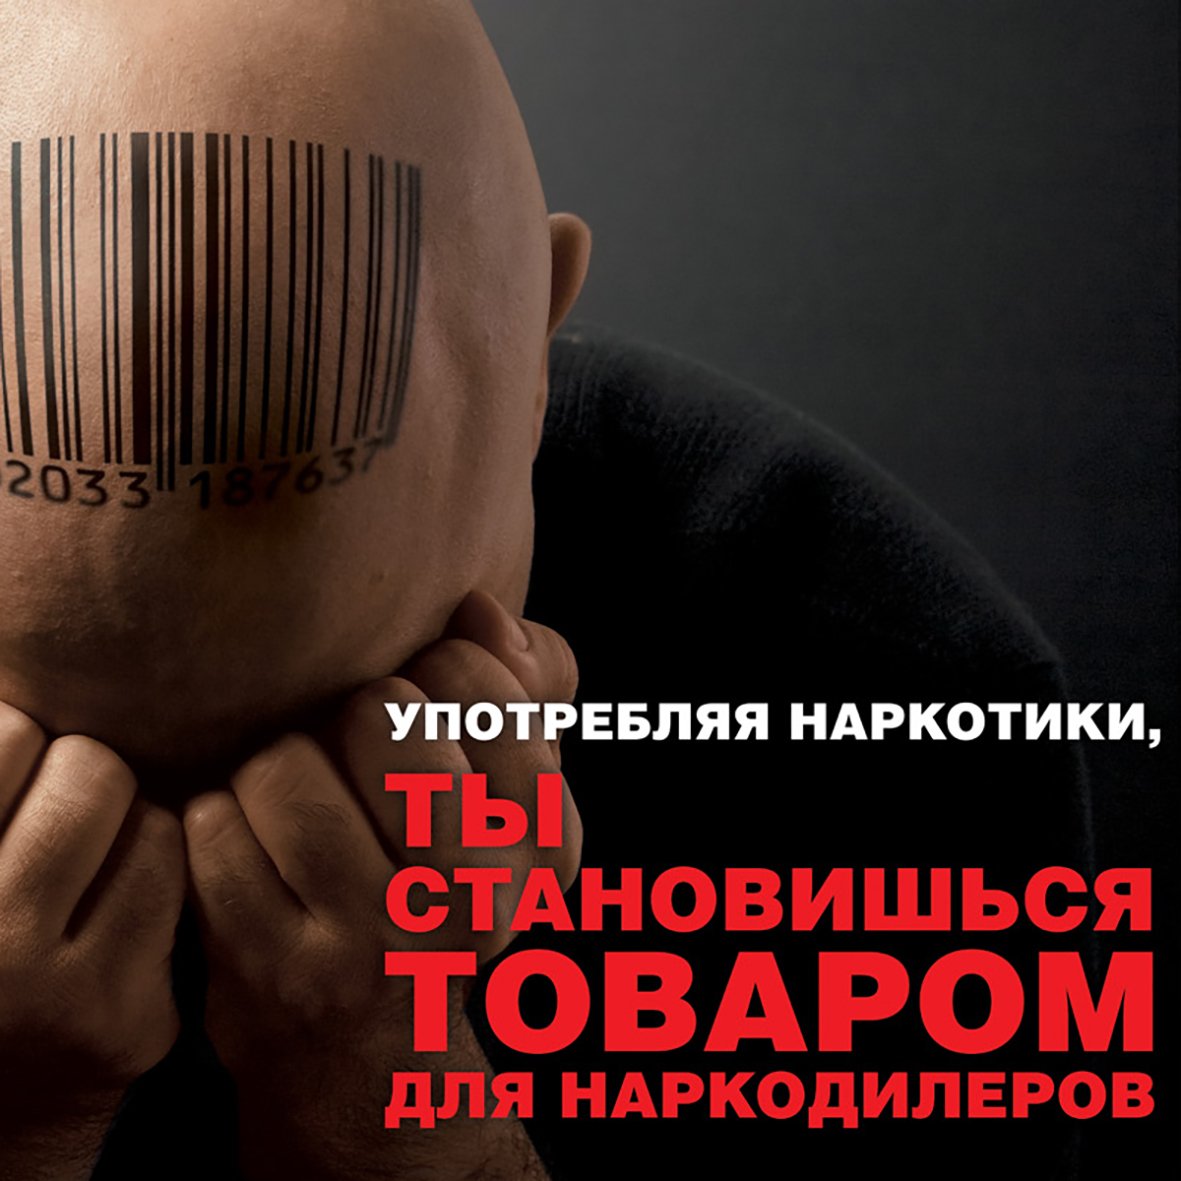 социальная реклама против наркотиков в россии